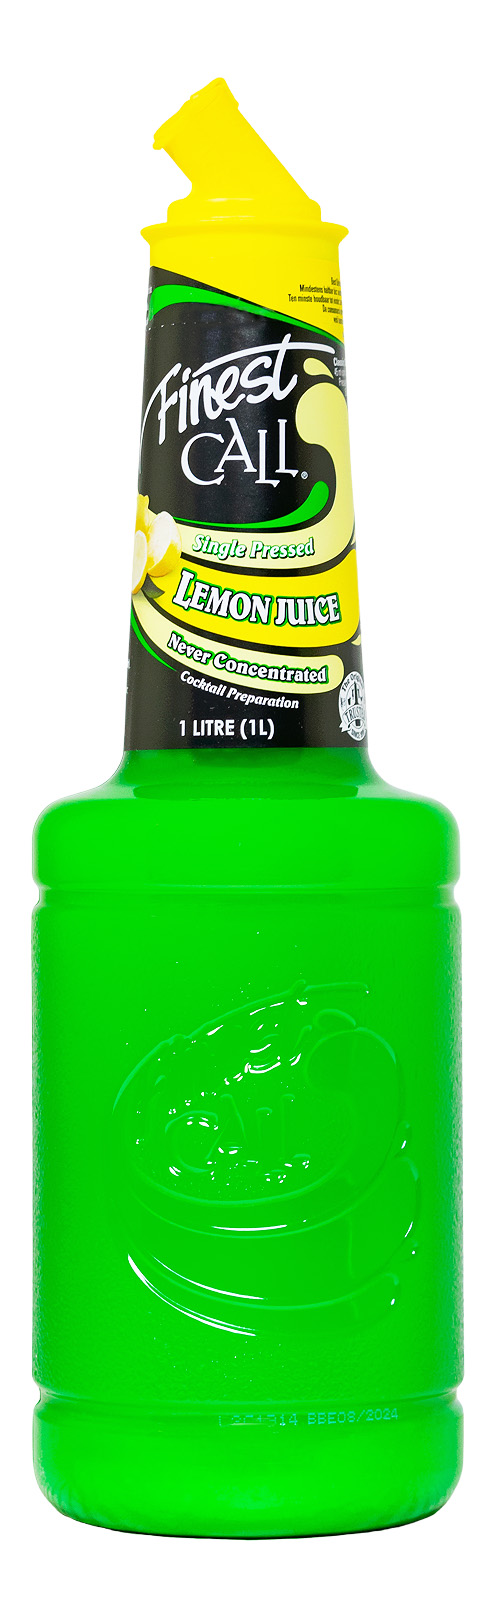 Finest Call Lemon Juice for Cocktails - 1 Liter